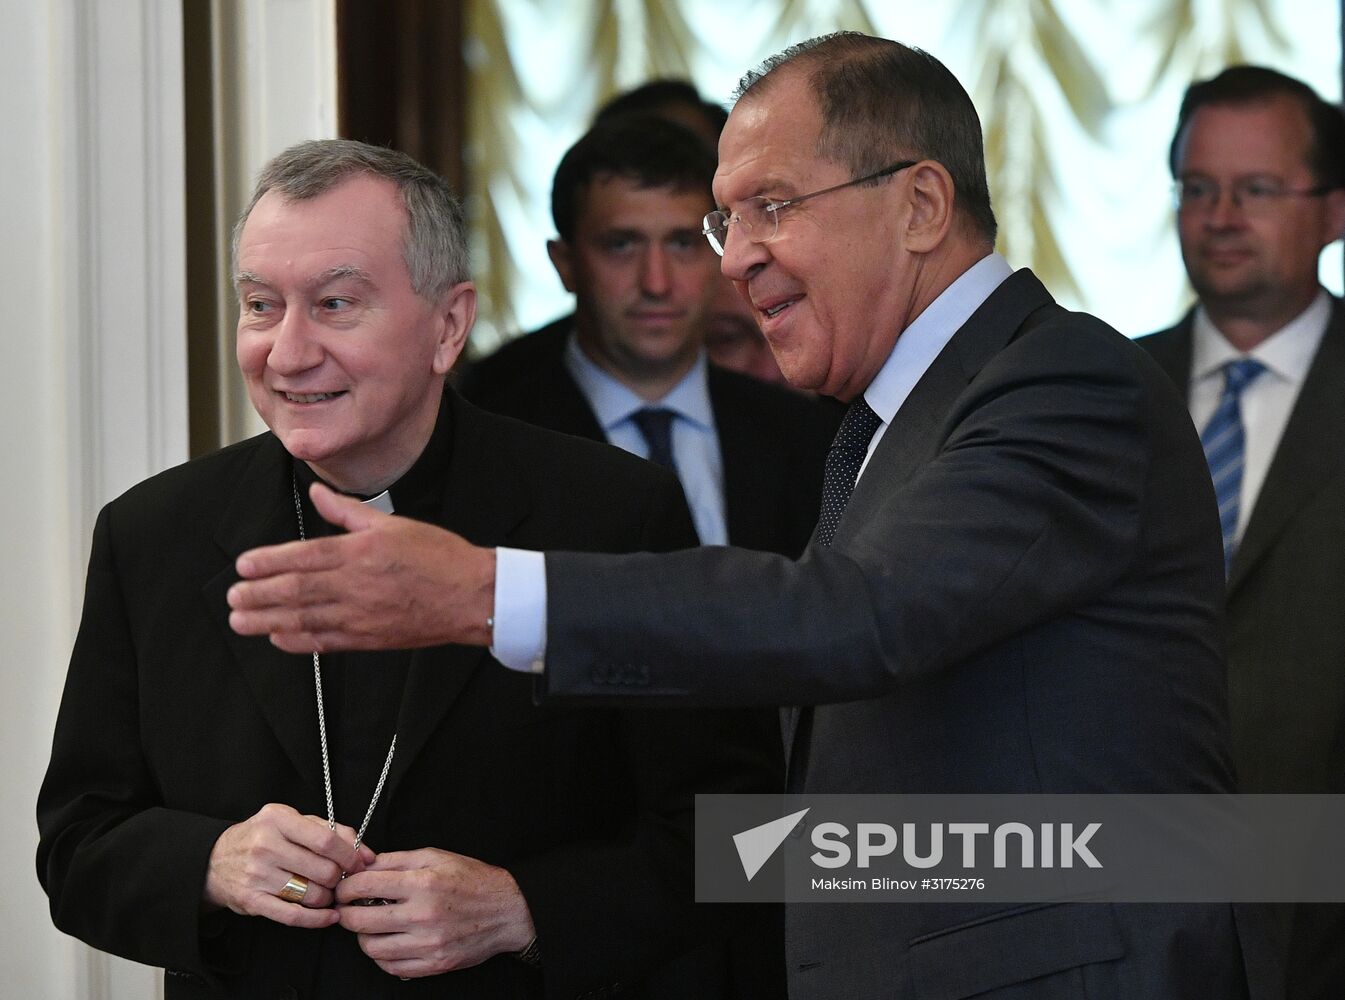 Sergei Lavrov meets with Vatican Secretary of State Cardinal Pietro Parolin